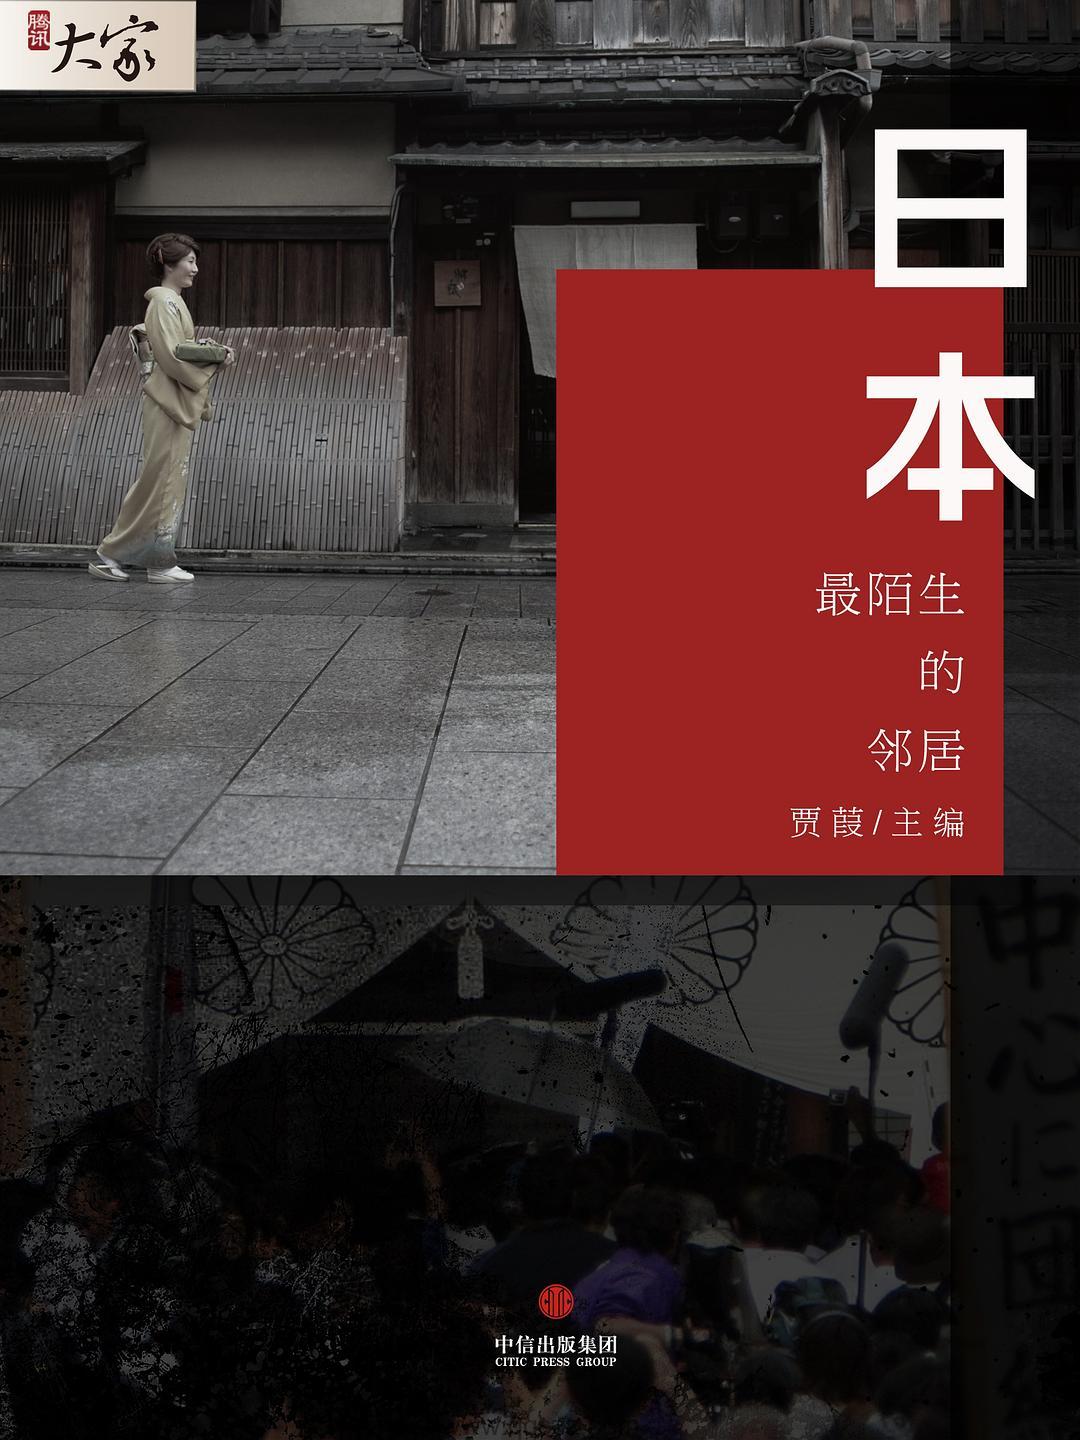 日本：最陌生的邻居-贾葭 azw3,epub,精校电子书,精排版,Kindle,下载,百度云